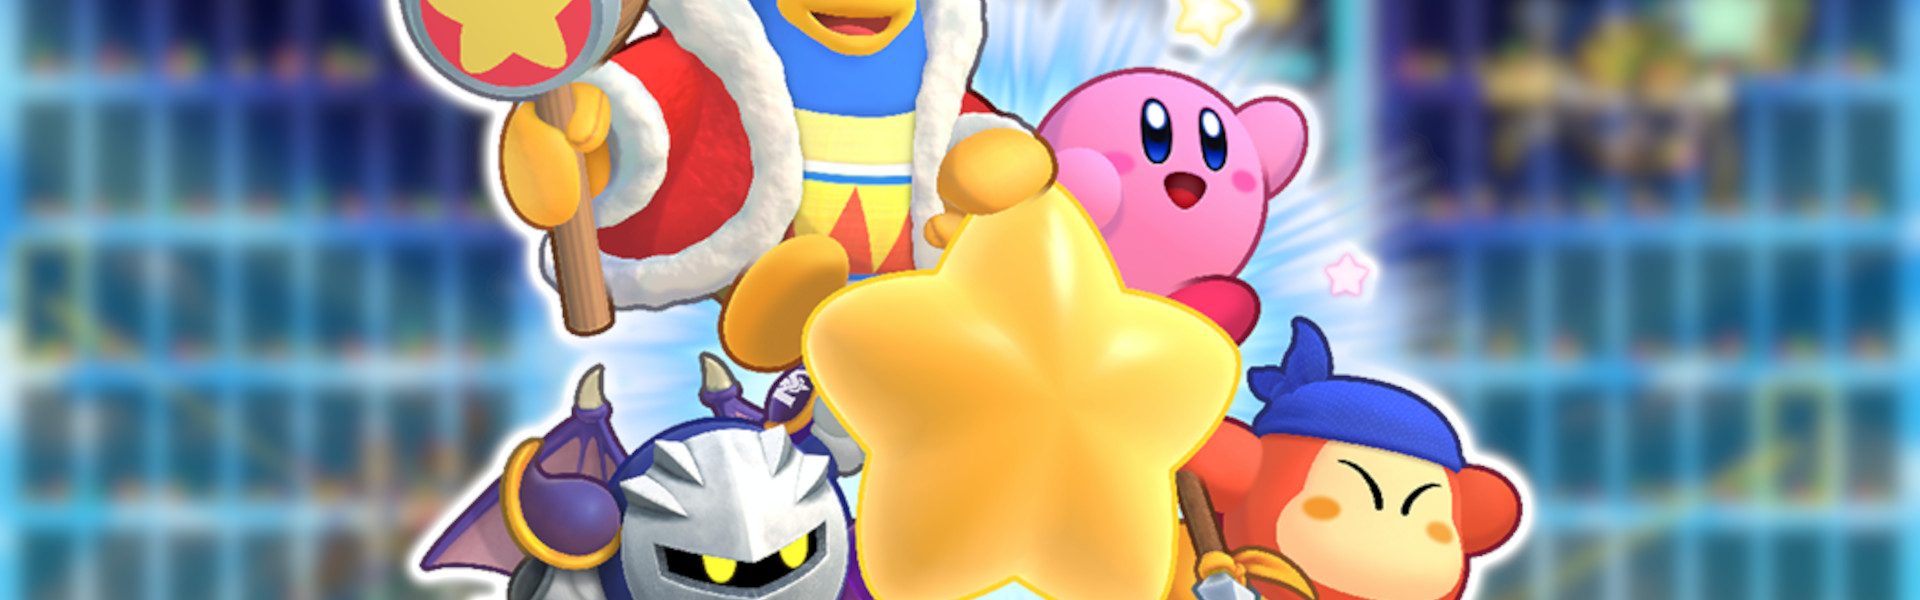 Zbieraj punkty w wydarzeniu Kirby’s Return to Dream Land Deluxe Tetris 99